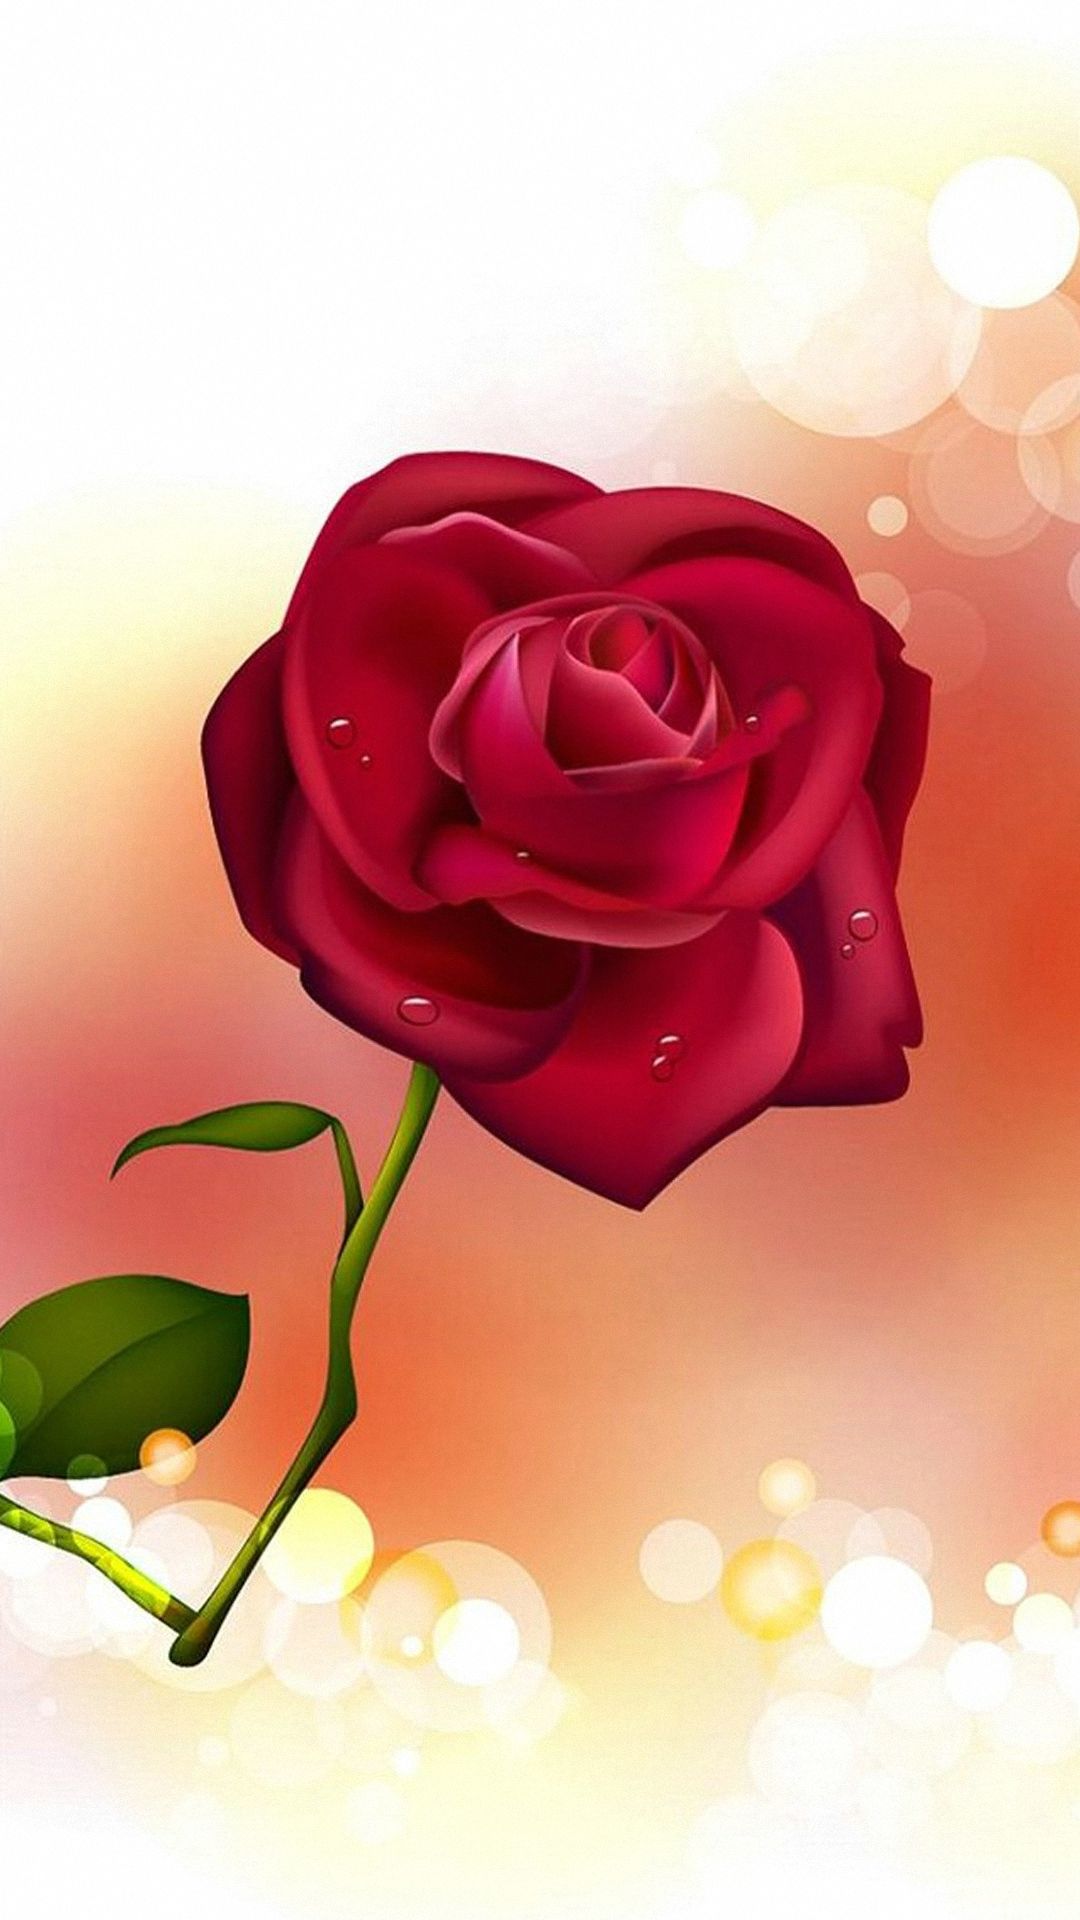 愛のバラのhdの壁紙,庭のバラ,花弁,ローズ,ピンク,赤